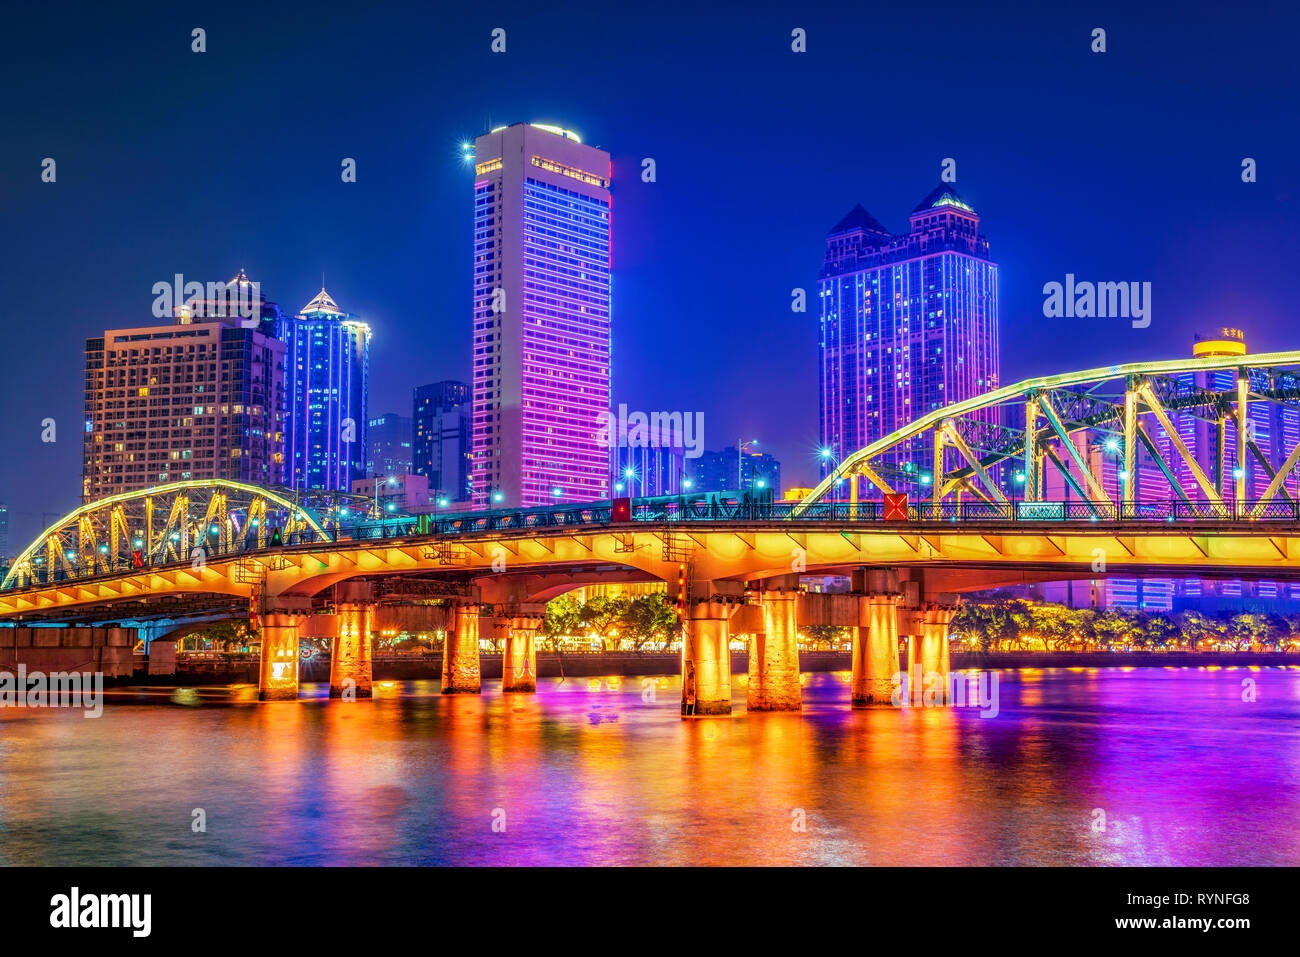 GUANGZHOU, Cina - 23 ottobre: questa è una vista serale del famoso Ponte di Haizhu e centro città edifici lungo il Fiume Pearl su 23 Ottobre 2018 Foto Stock